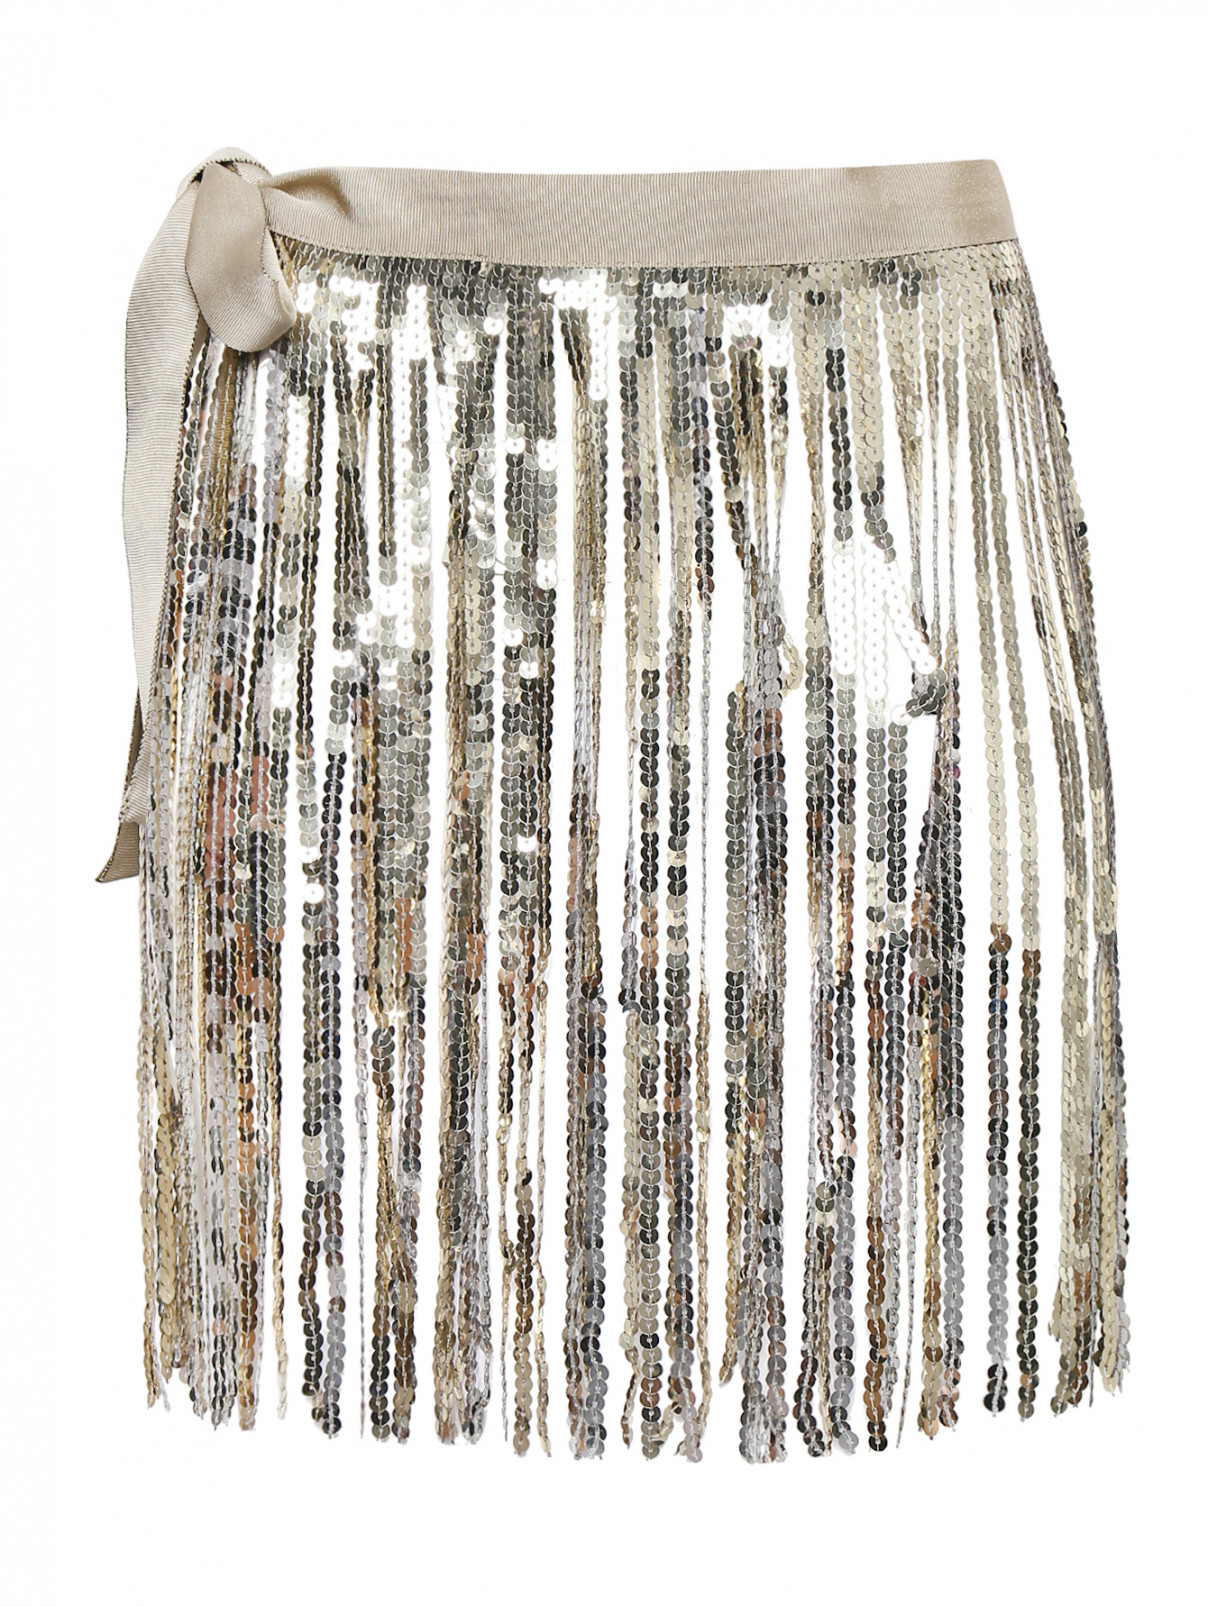 Пояс из текстиля с бахромой Marina Rinaldi  –  Общий вид  – Цвет:  Золотой